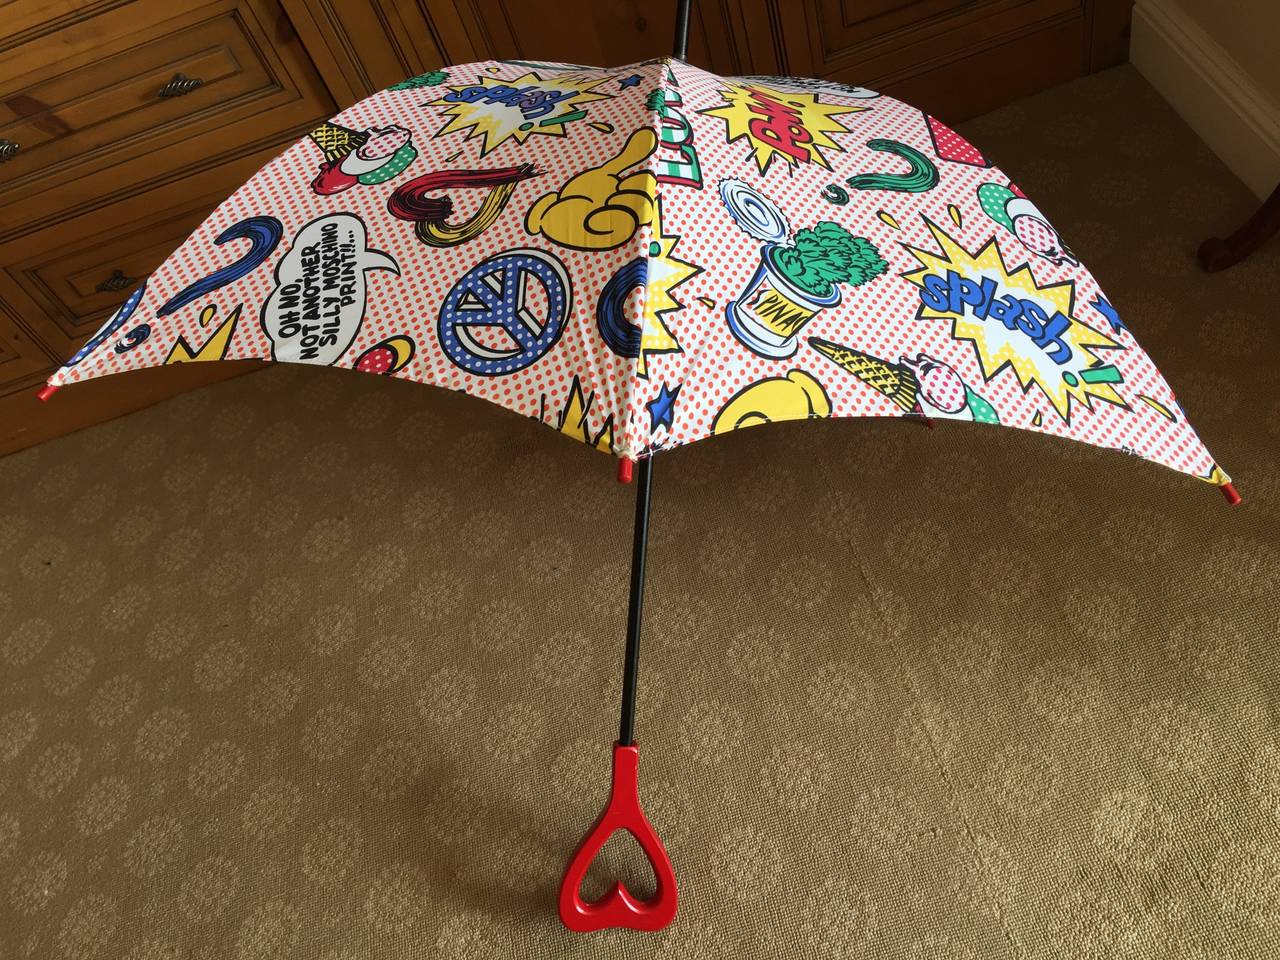 Moschino 1991 Lichtenstein Inspired Umbrella with Heart Handle 1